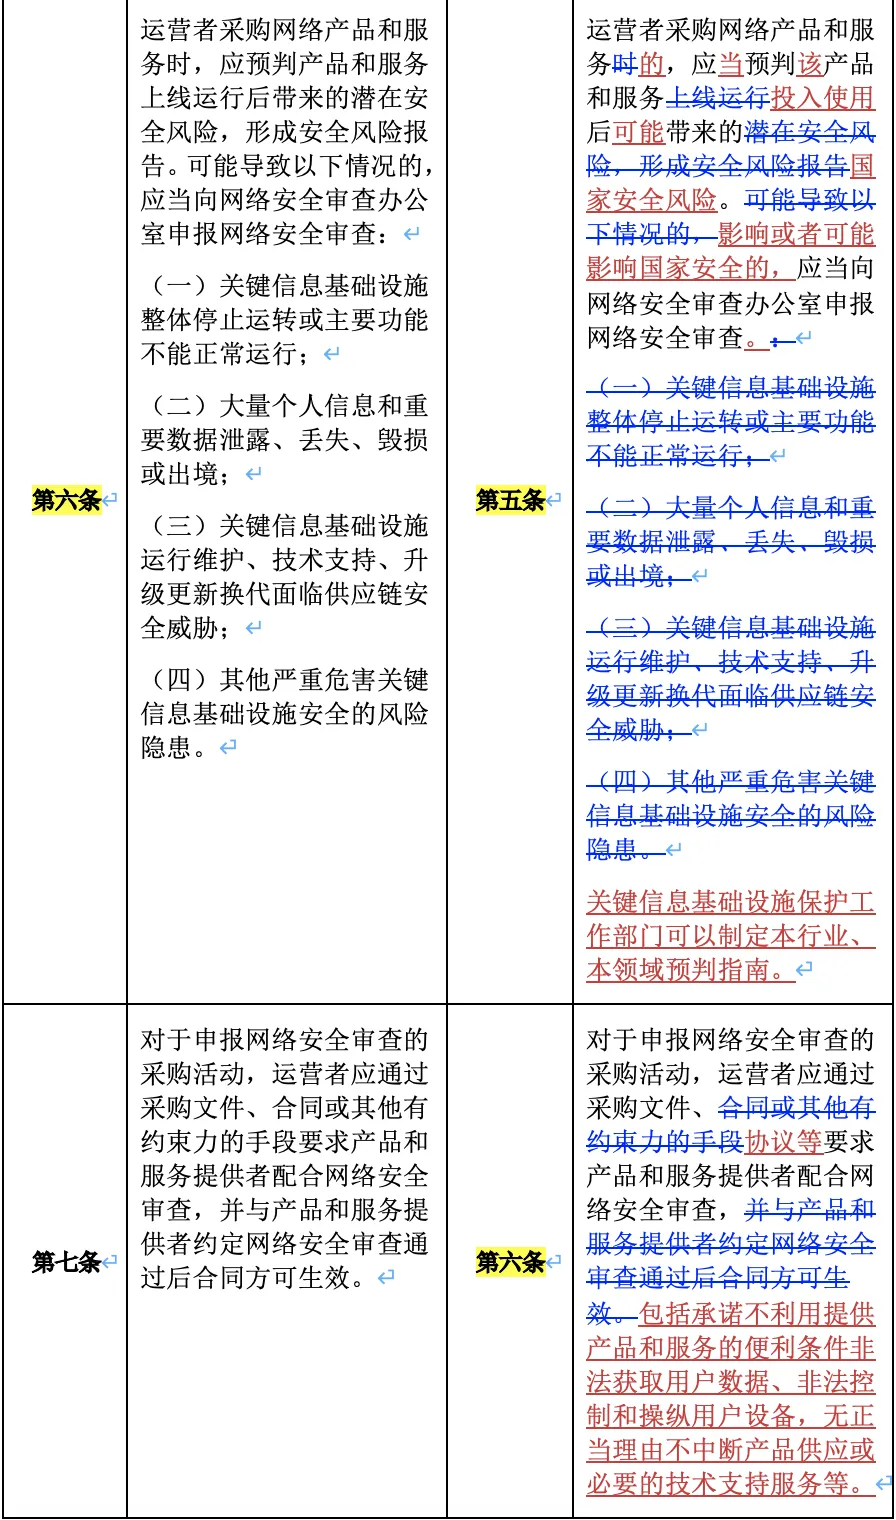 一文秒懂《网络安全审查办法》 - 法律桥-上海杨春宝一级律师